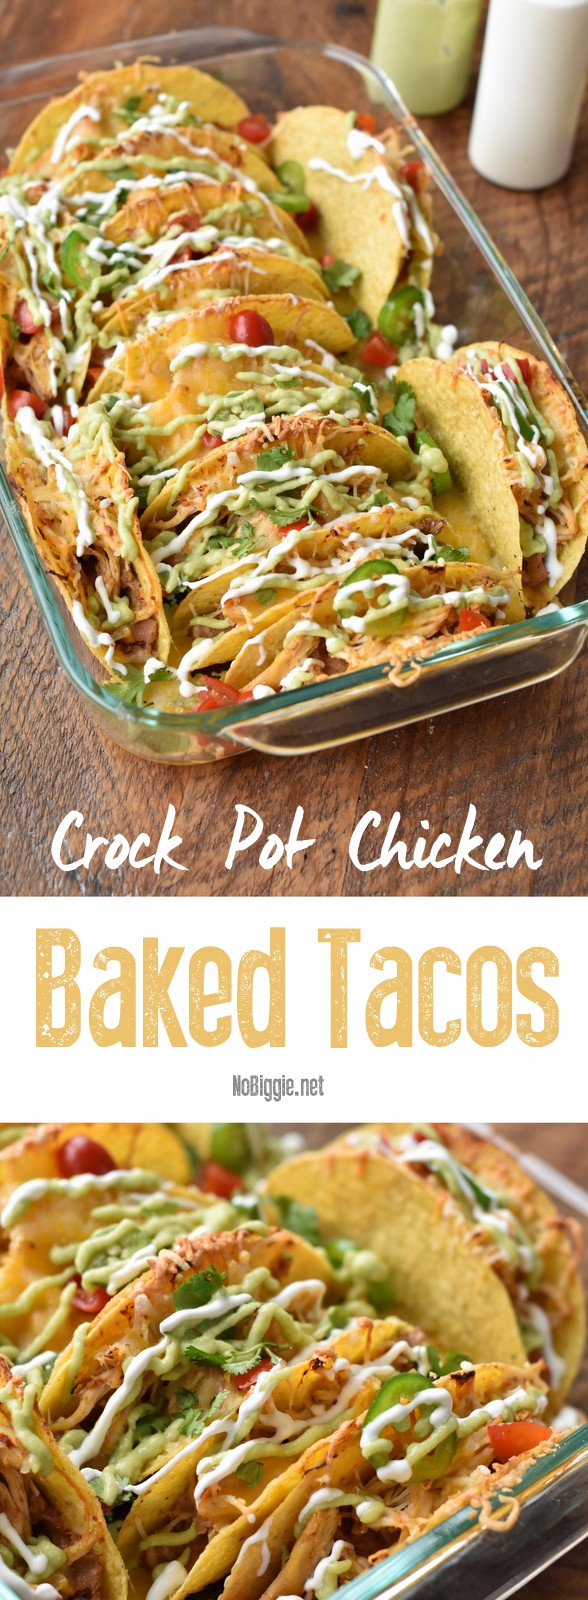 Crock Pot Chicken Baked Tacos | NoBiggie.net